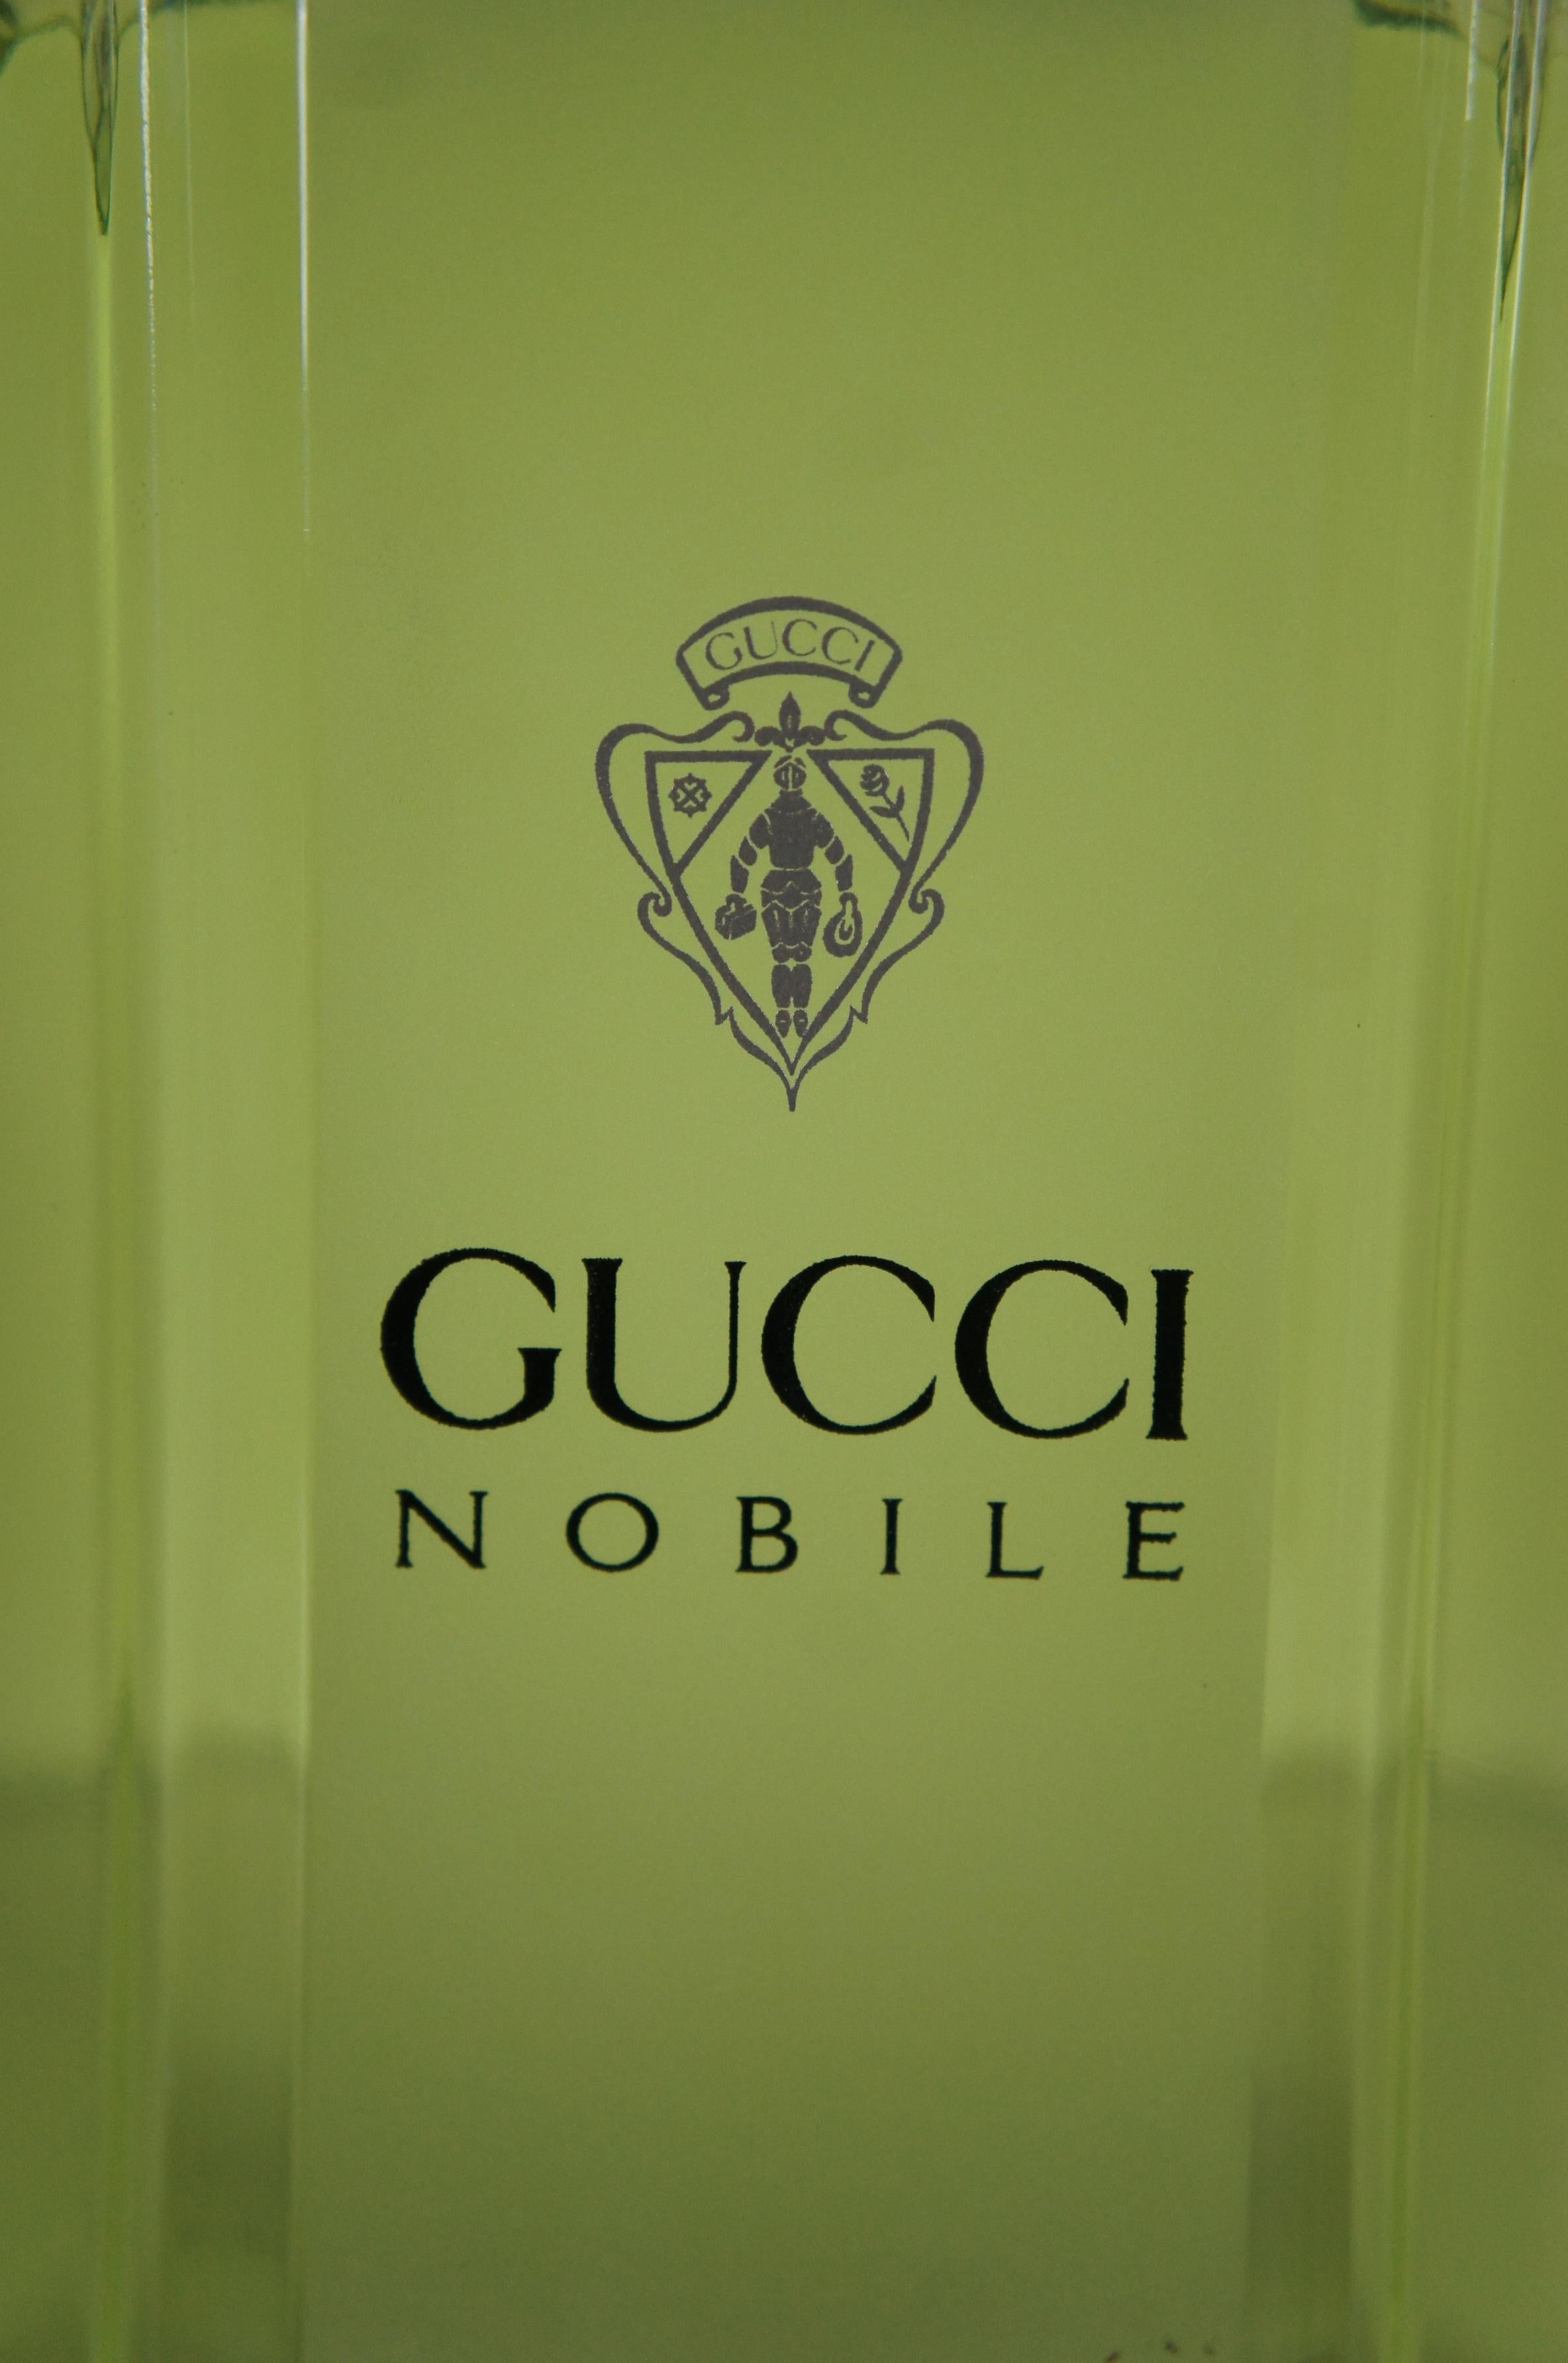 Gucci Nobile Eau Toilette Factice Dummy Cologne Perfume Bottle Store Display en vente 4